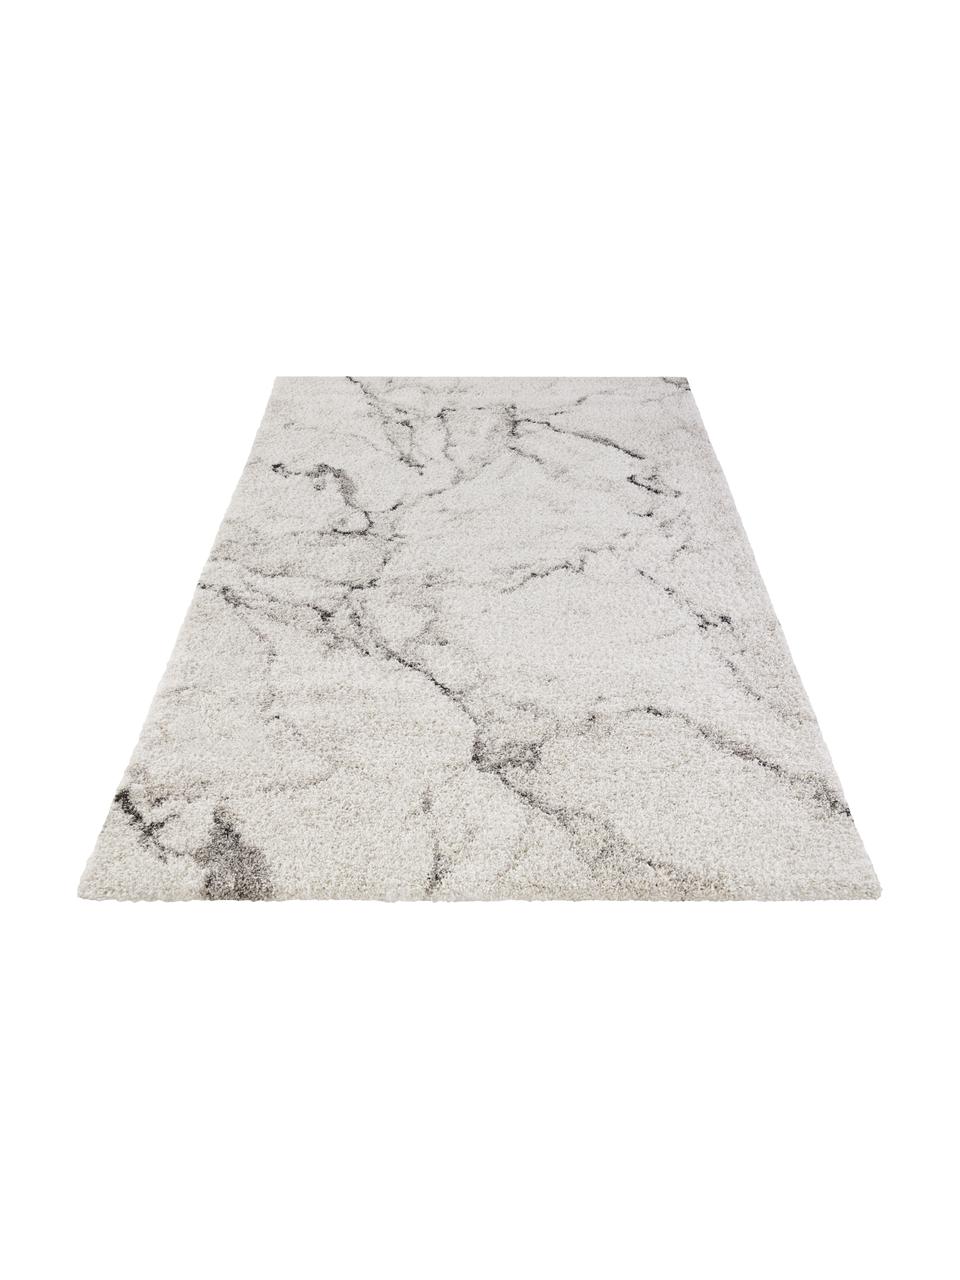 Flauschiger Hochflor-Teppich Mayrin mit marmoriertem Muster, Flor: 100% Polypropylen, Grautöne, B 120 x L 170 cm (Grösse S)